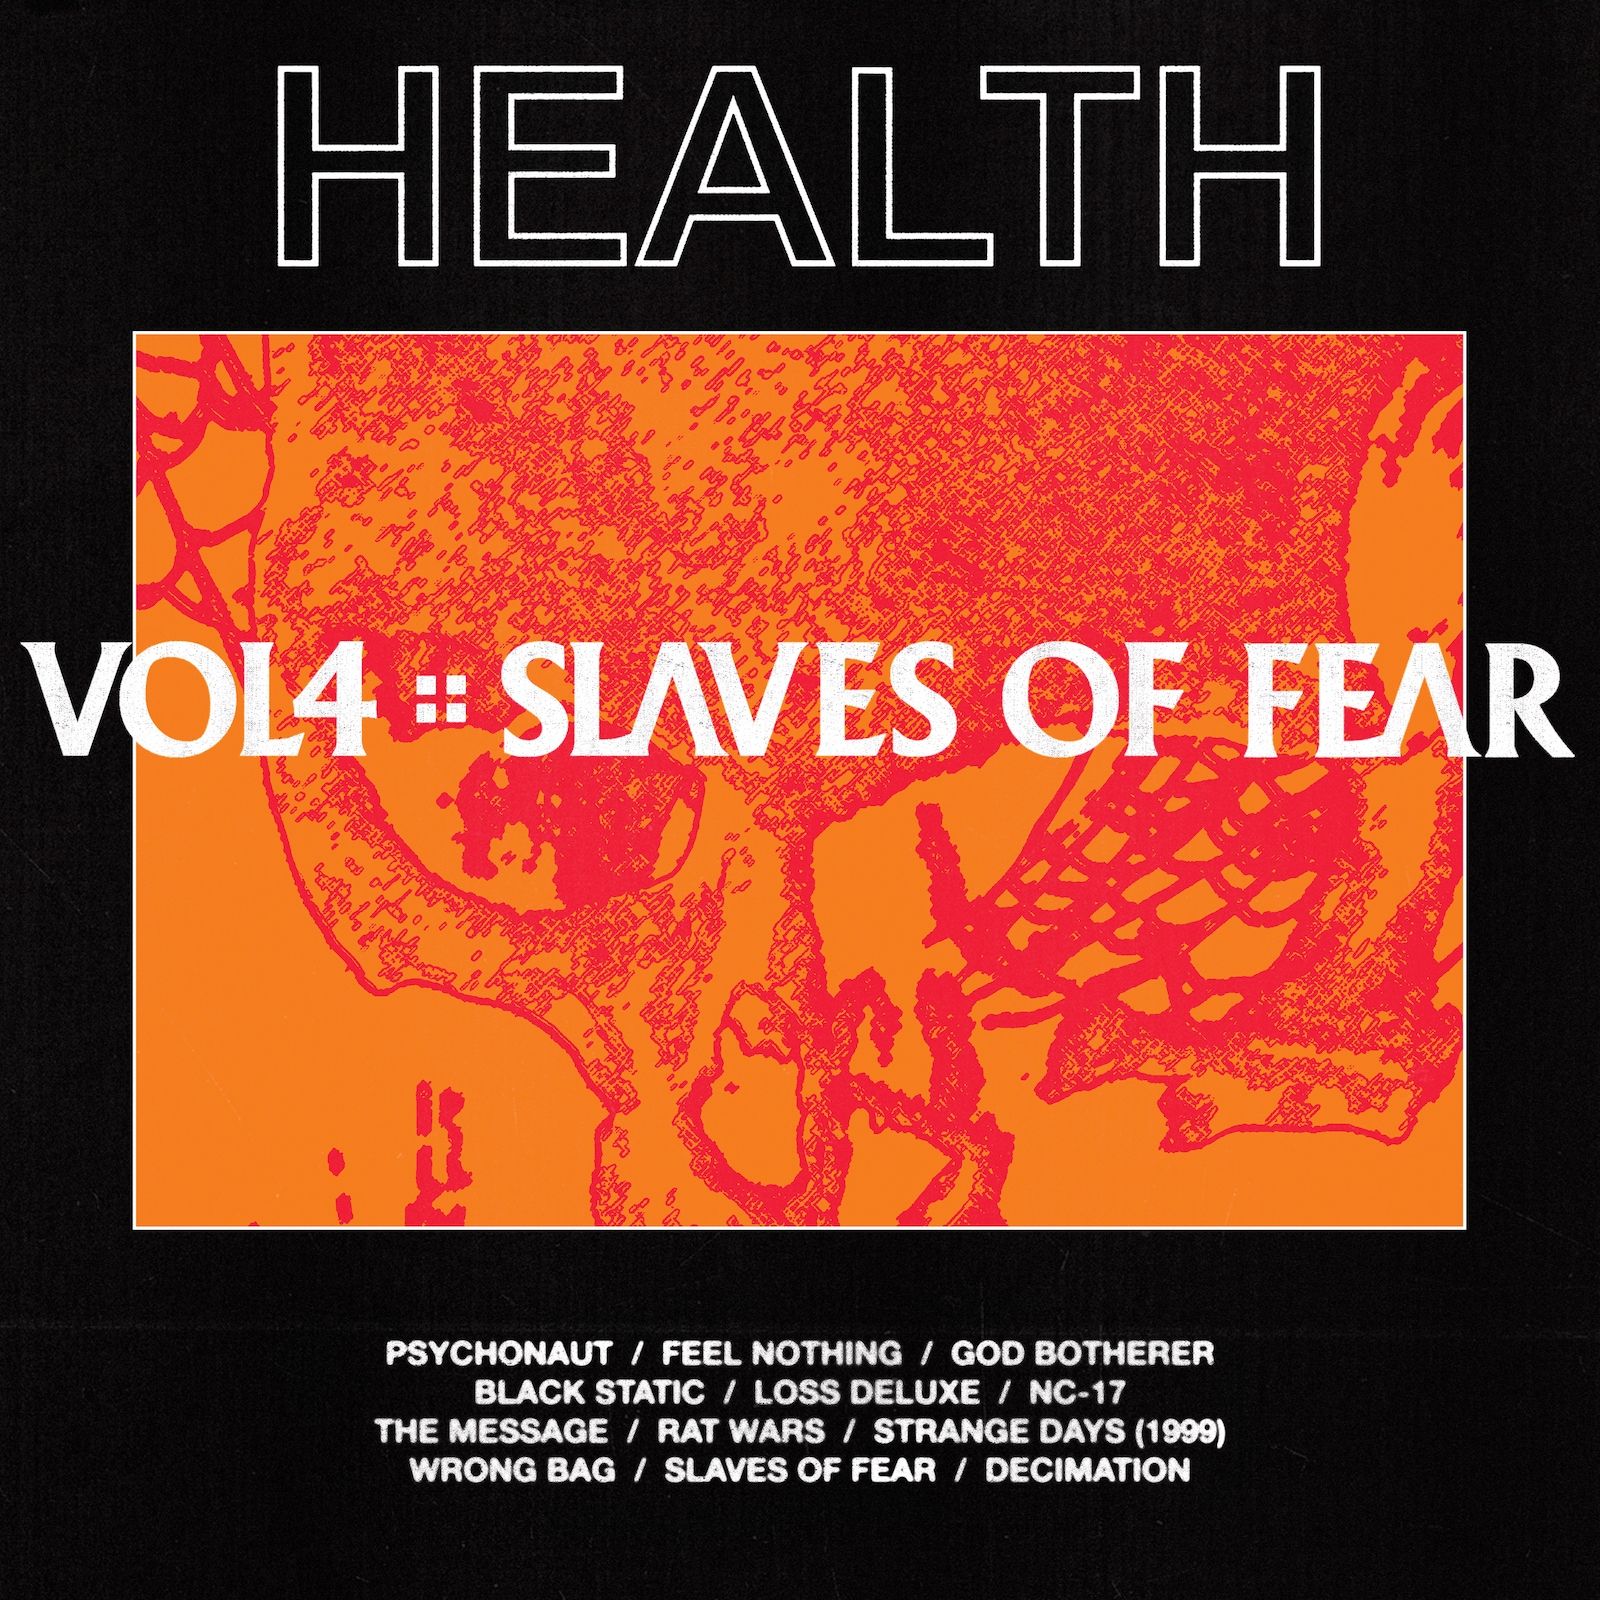 Imagem do álbum VOL. 4 :: SLAVES OF FEAR do(a) artista Health